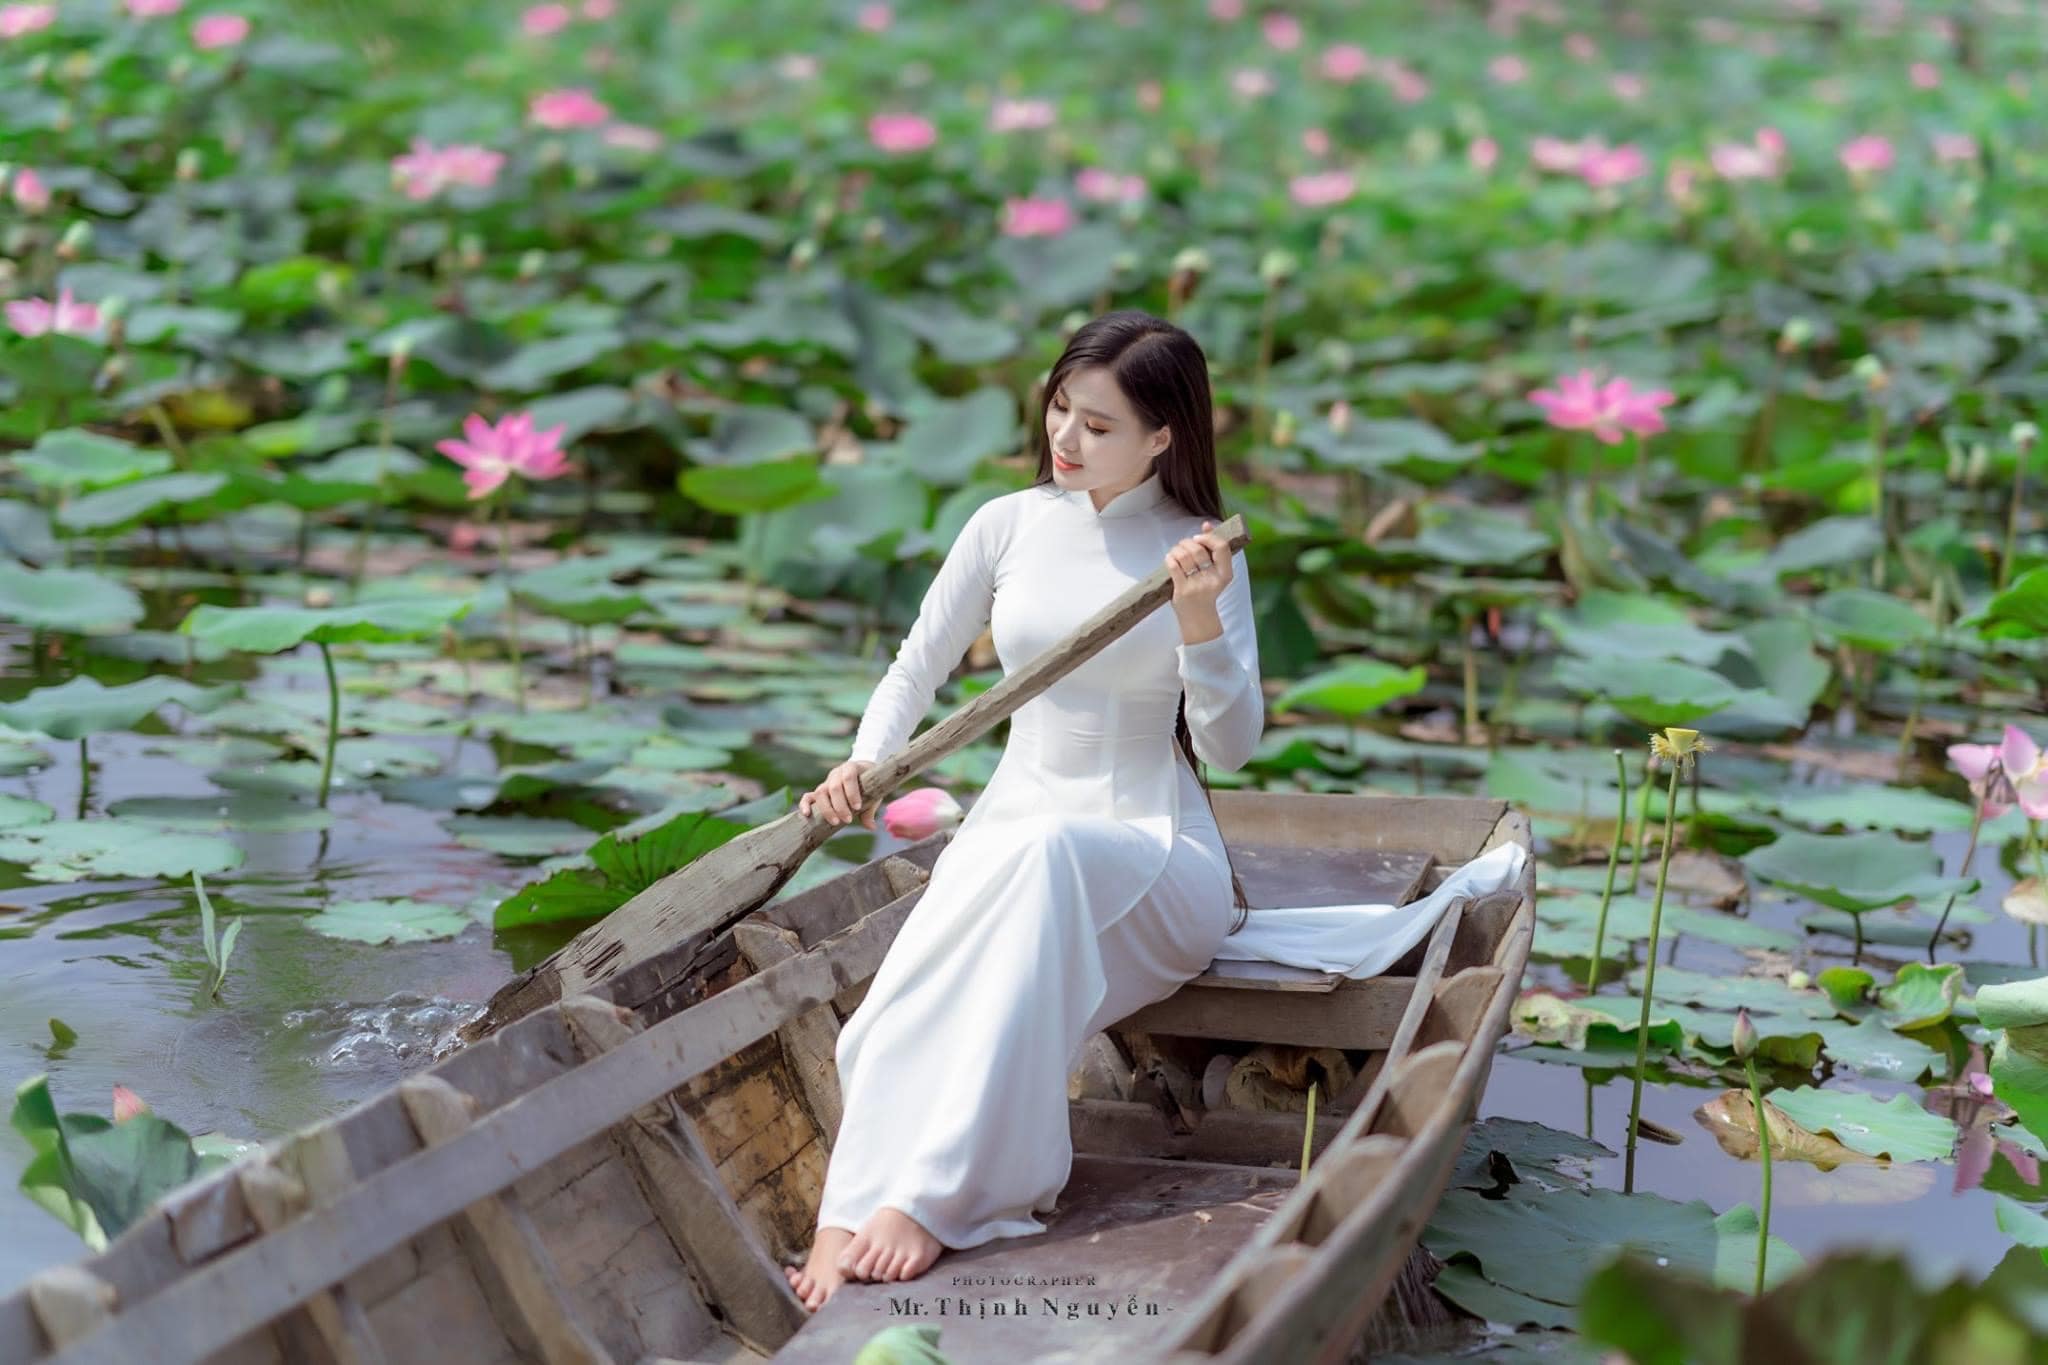 Thieu nu cheo xuong min - 39 cách tạo dáng chụp ảnh với hoa sen tuyệt đẹp - HThao Studio